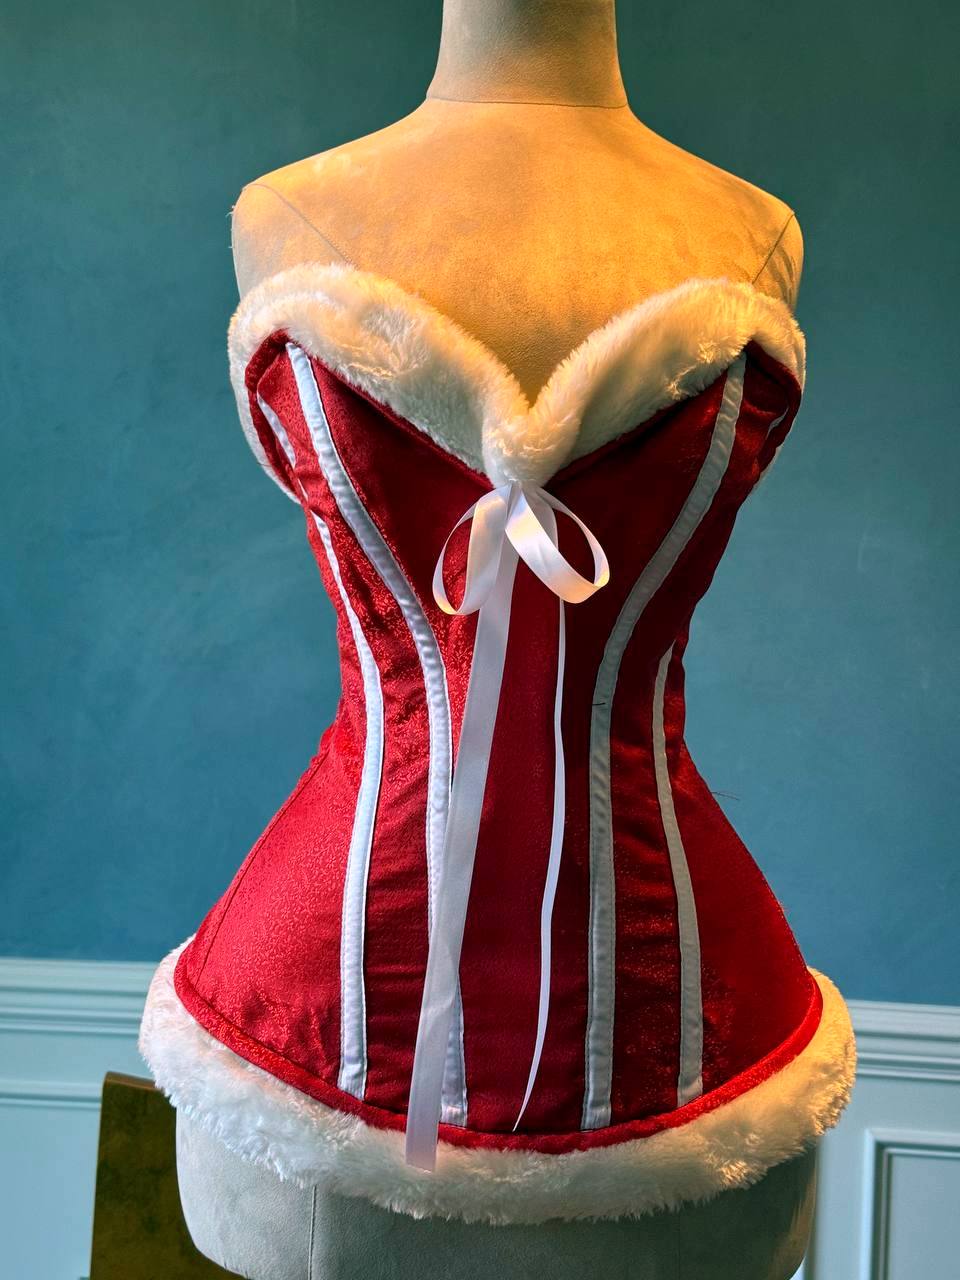 
                  
                    קורסט חג המולד הזול בסטין אדום עם עצמות לבנות ופרווה. הקורסט מיוצר אישית לפי המידות שלך.
                  
                